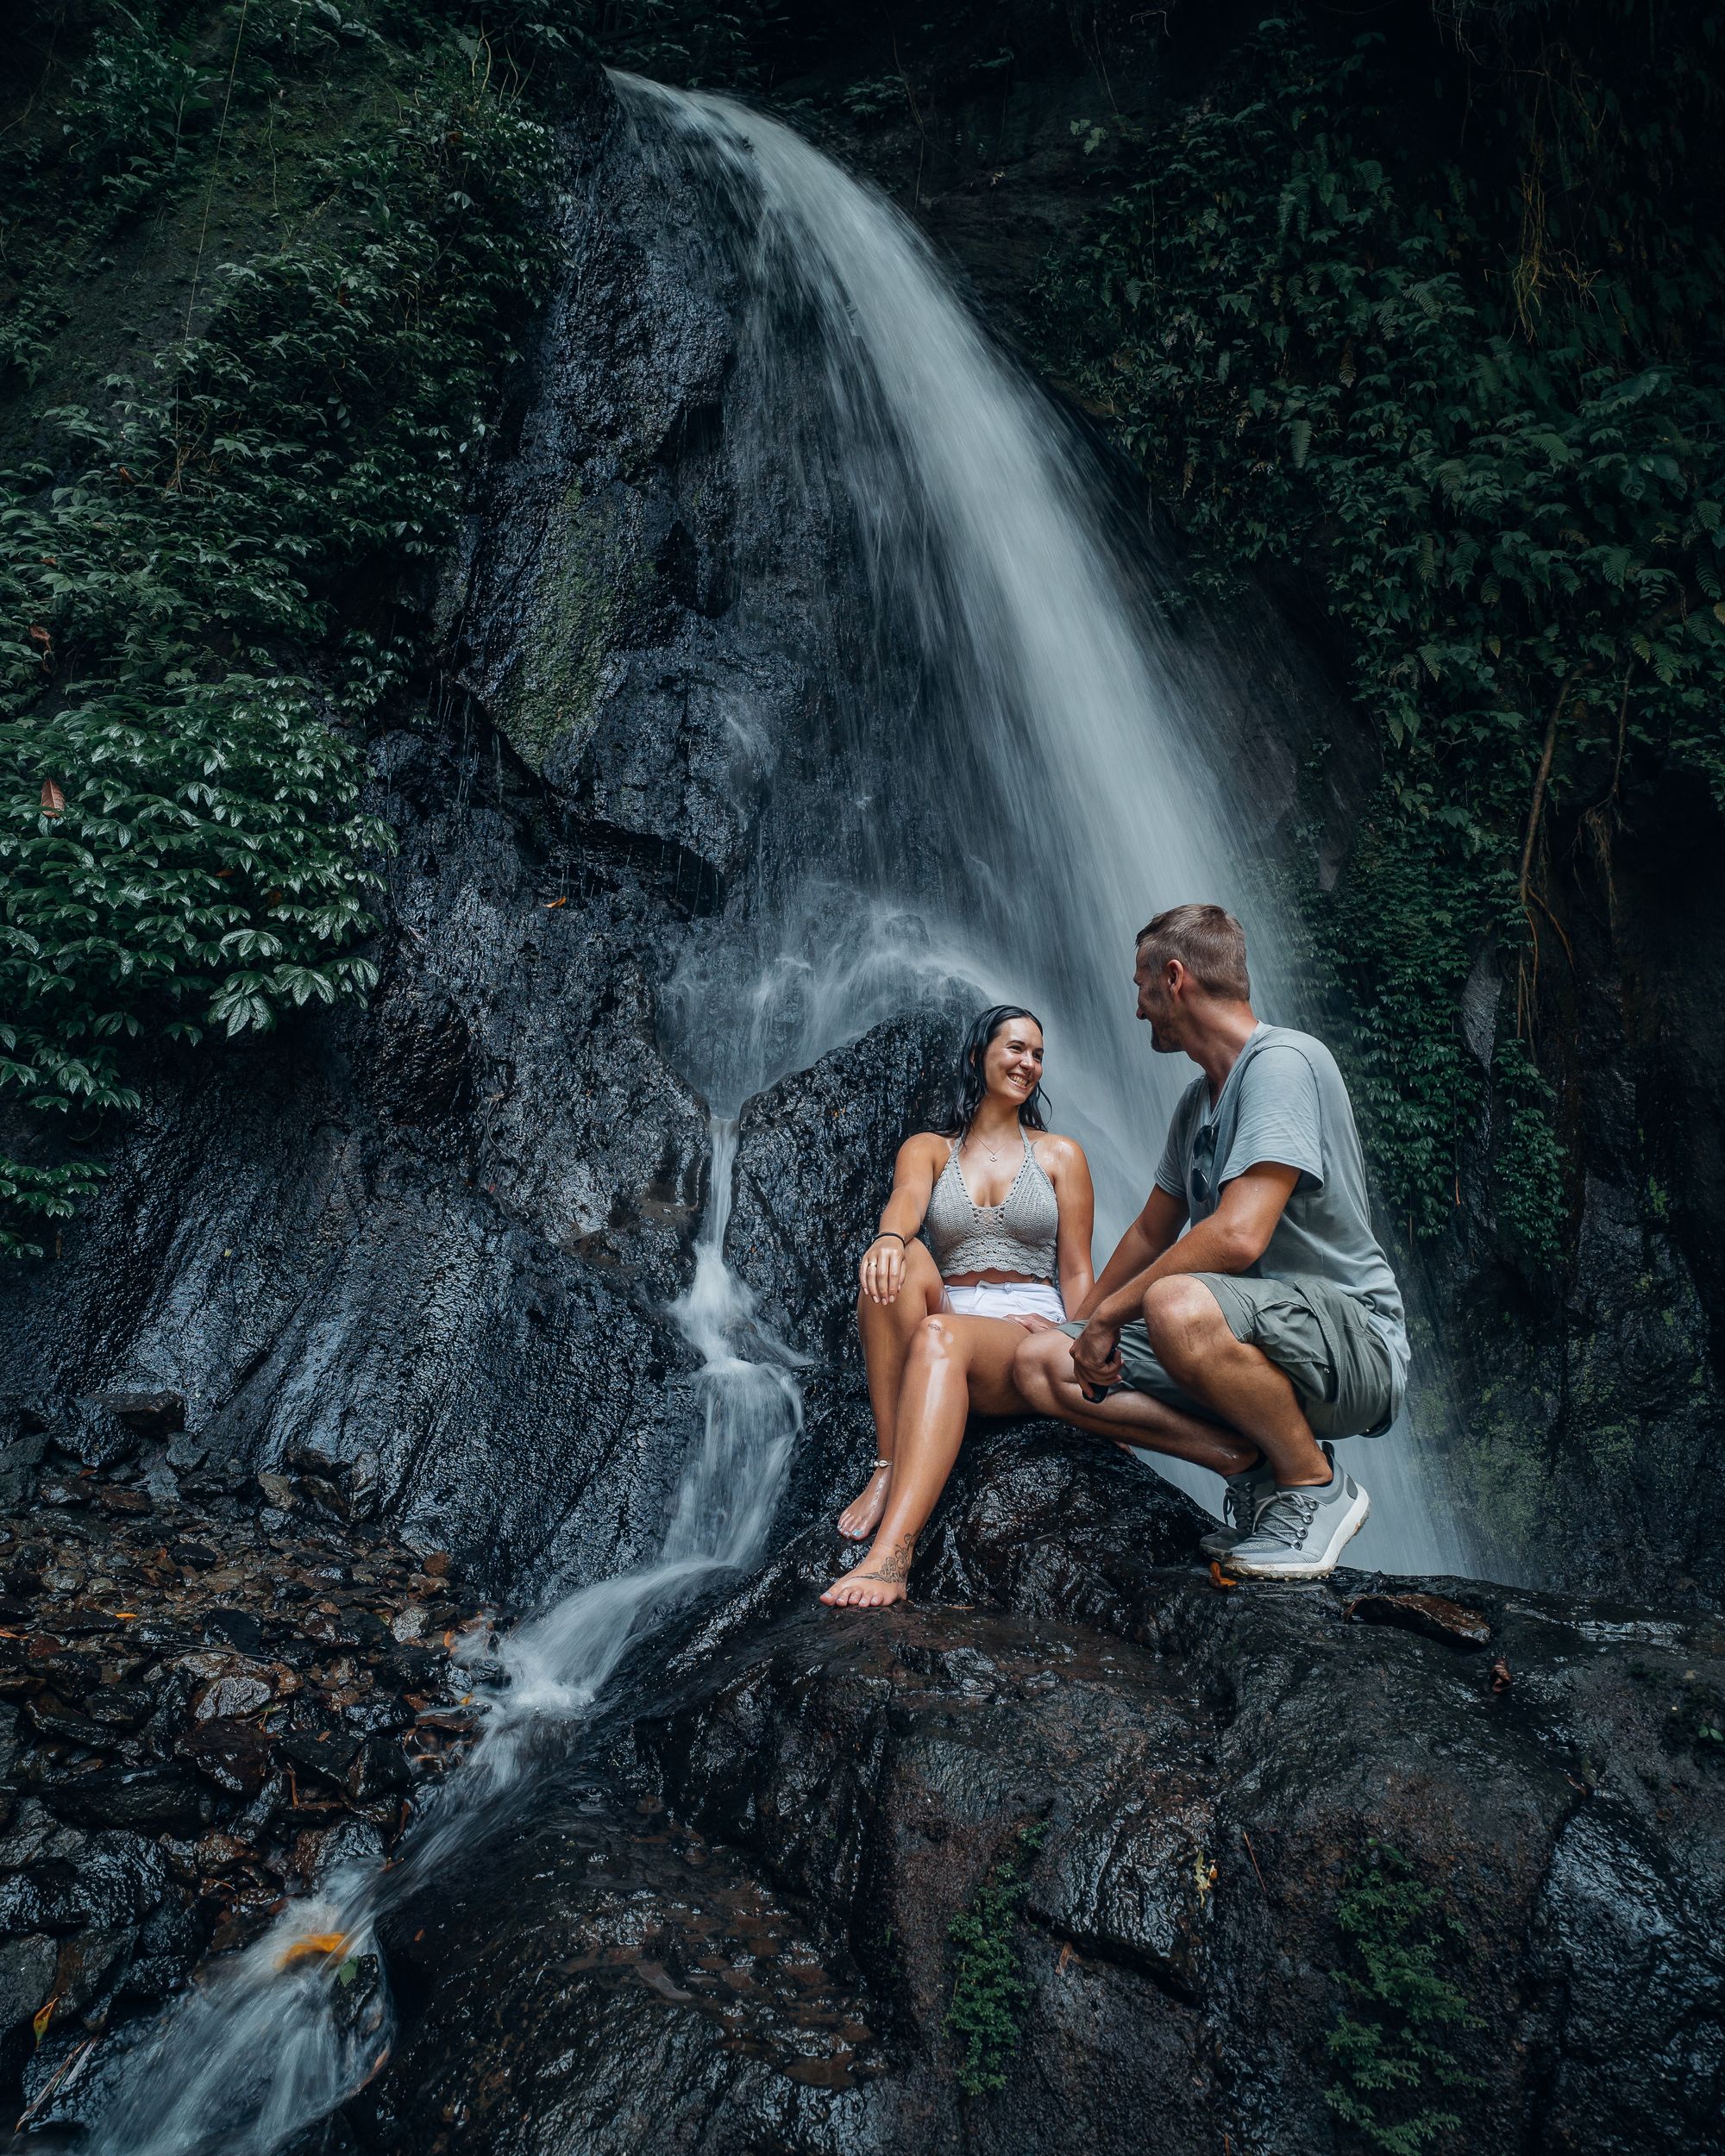 Eine Erfrischende Oase der Schönheit: der Taman Sari Wasserfall auf Bali